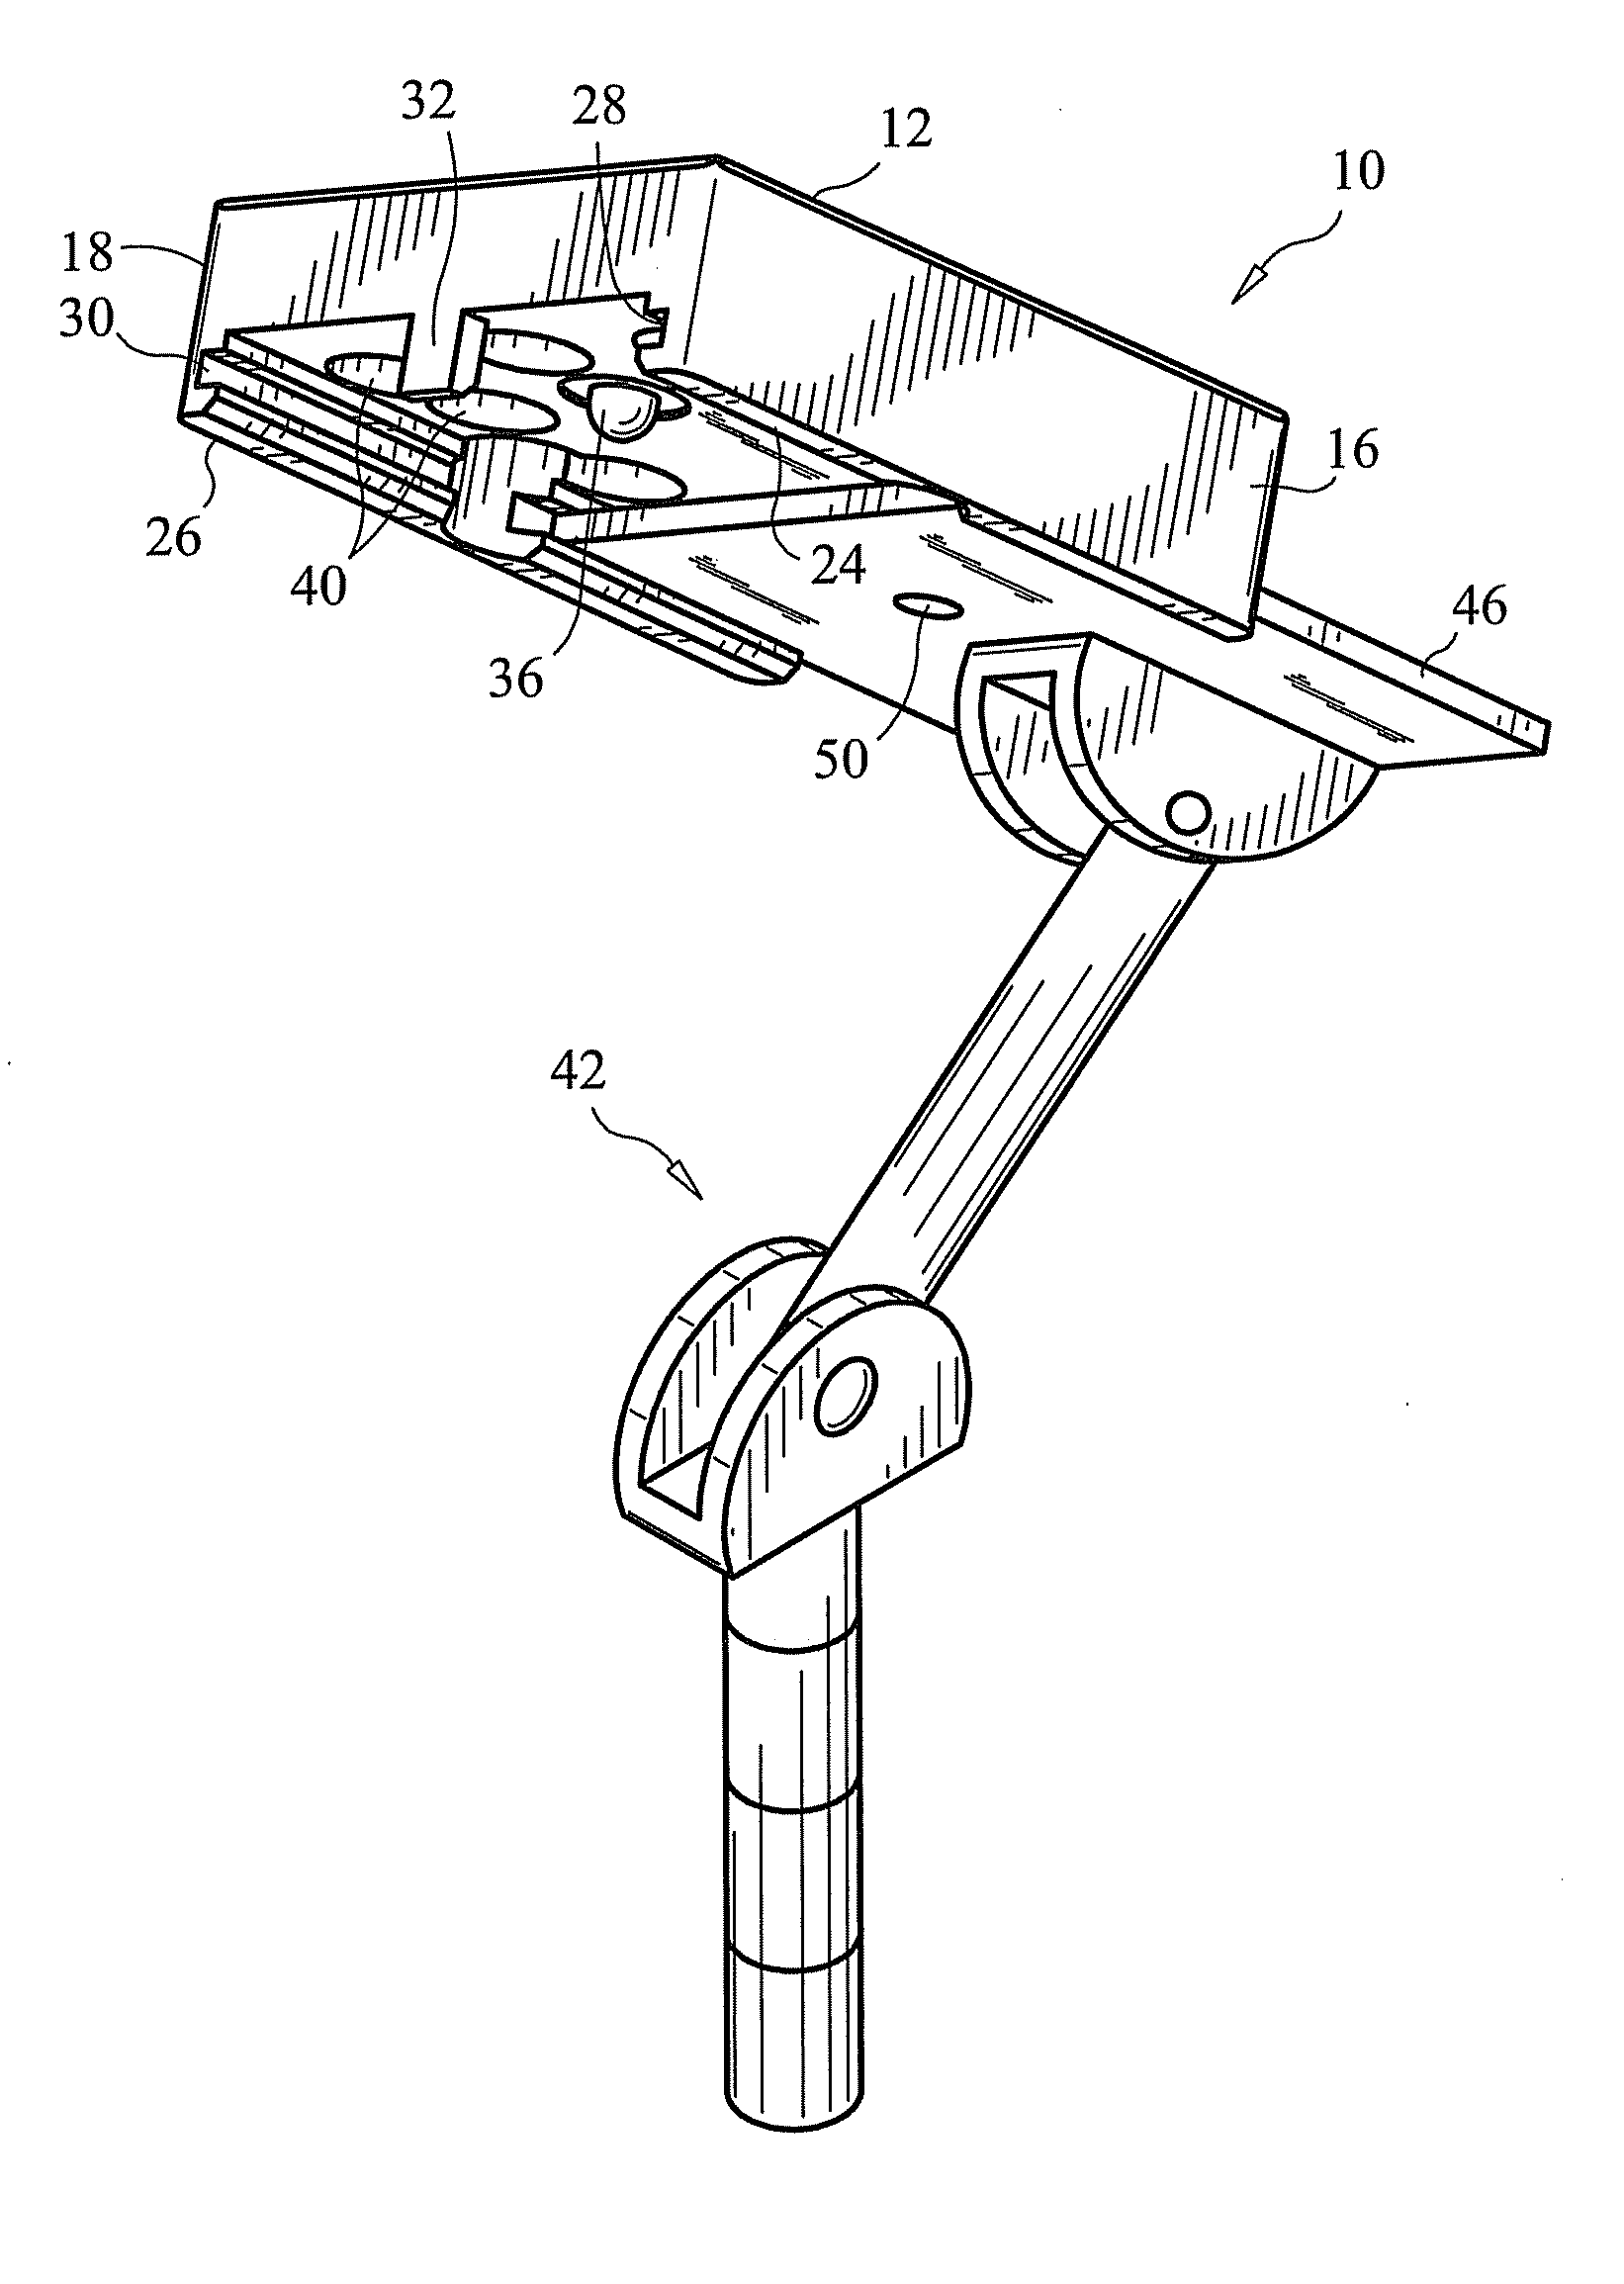 Adaptor for vehicle mounts